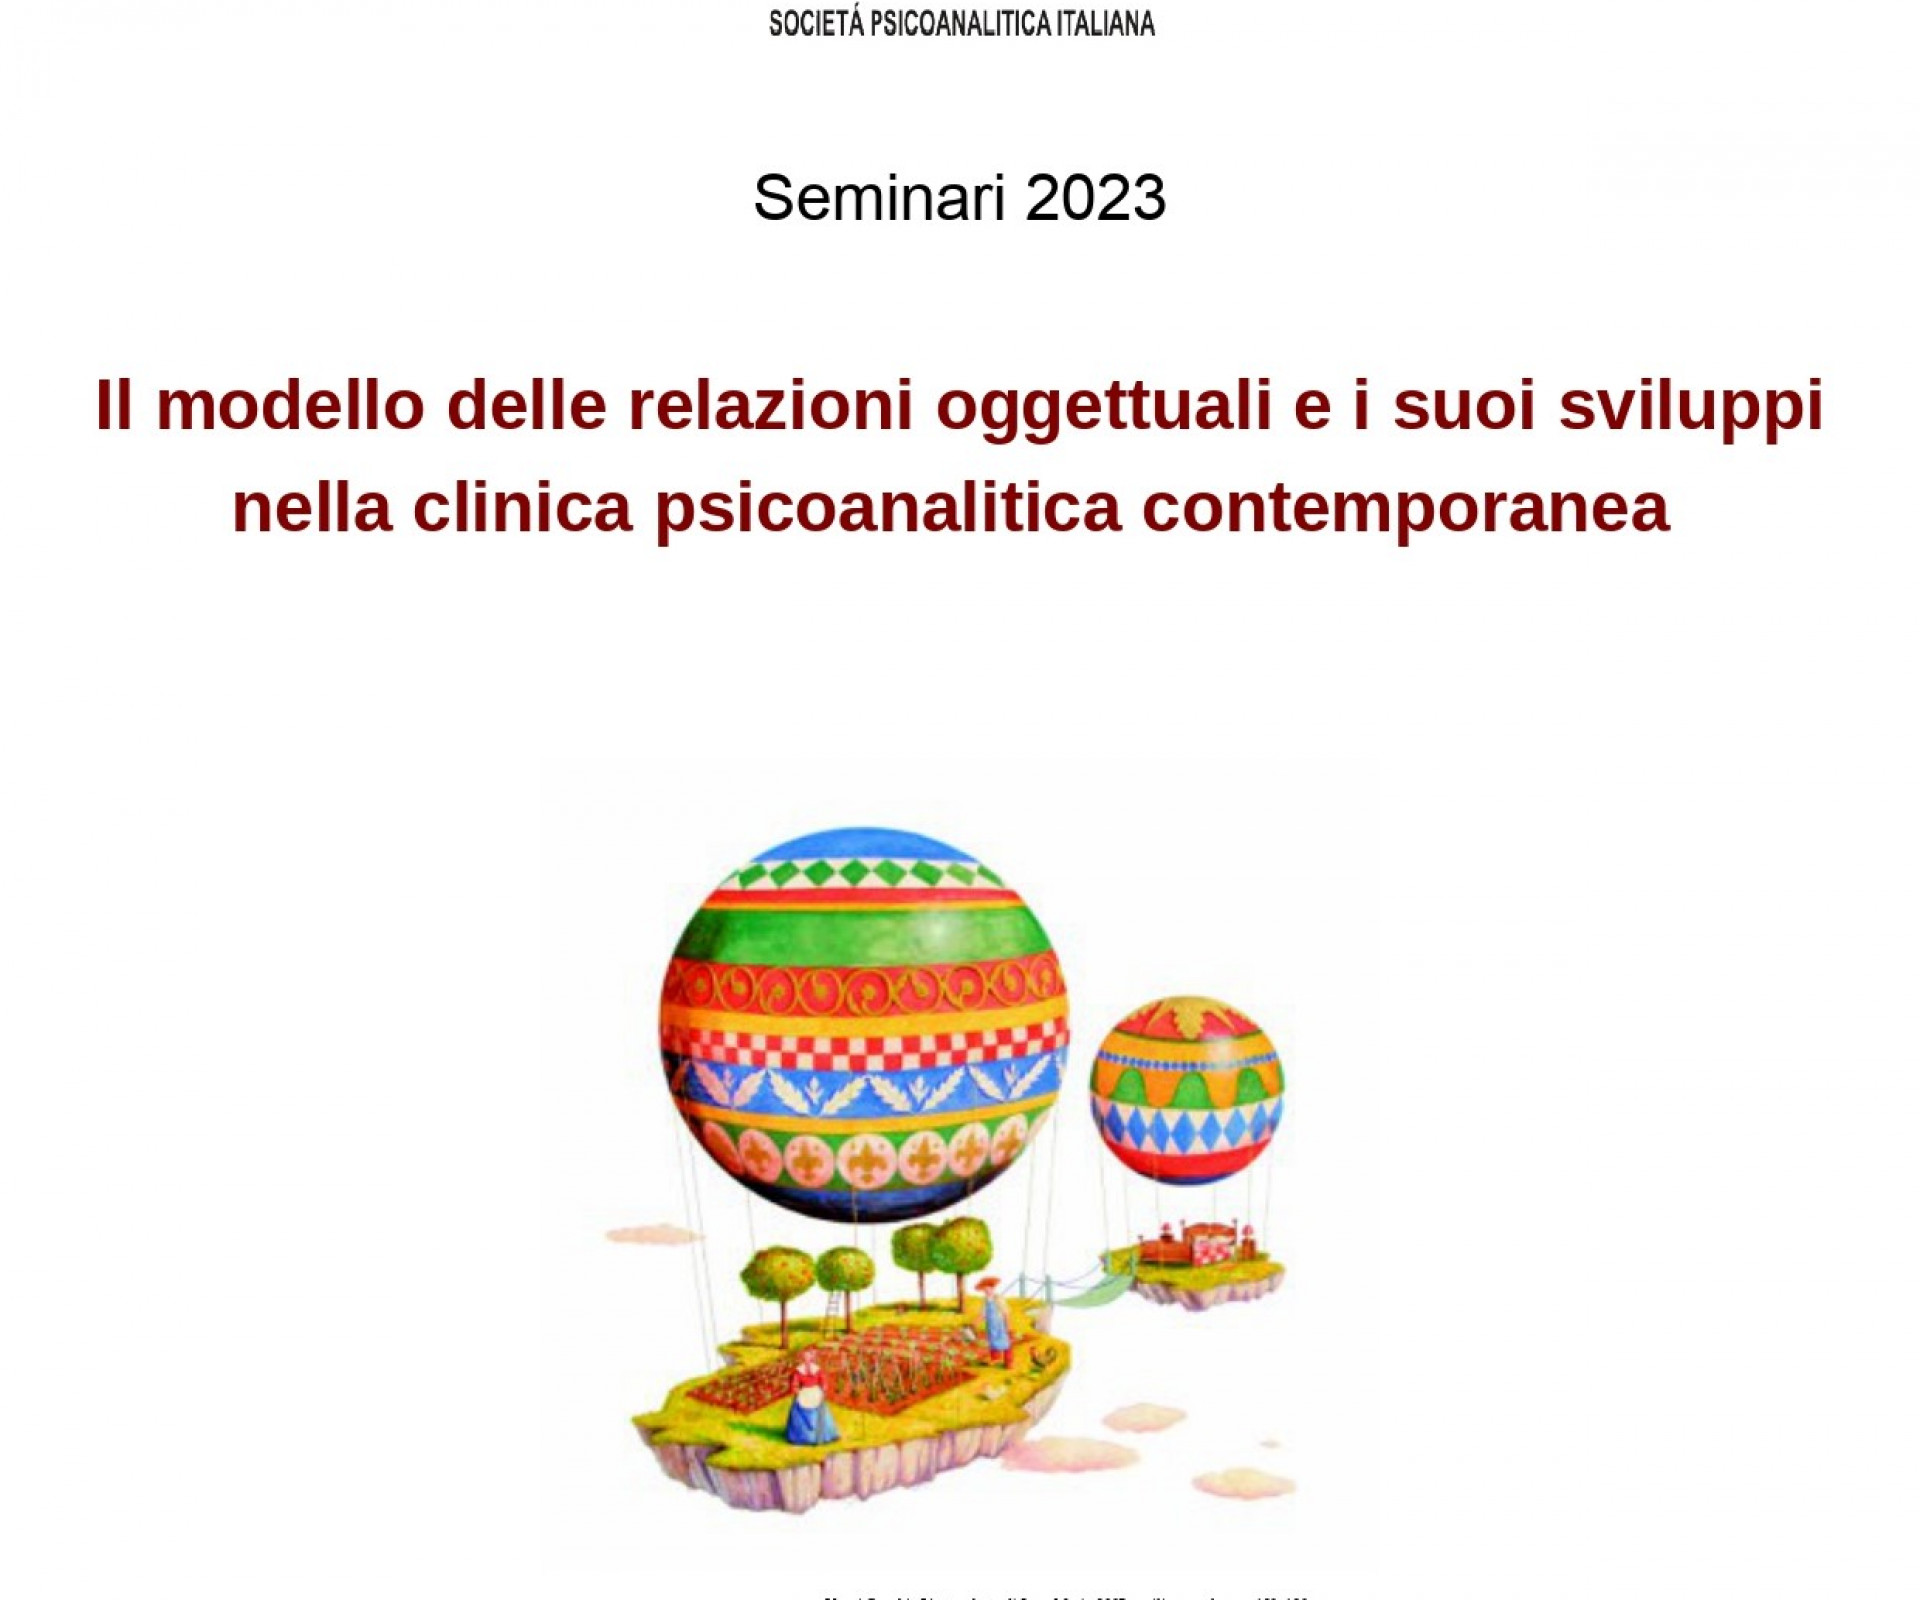 CENTRO TORINESE DI PSICOANALISI - Seminari 2023 - Il modello delle relazioni oggettuali e i suoi sviluppi nella clinica psicoanalitica contemporanea